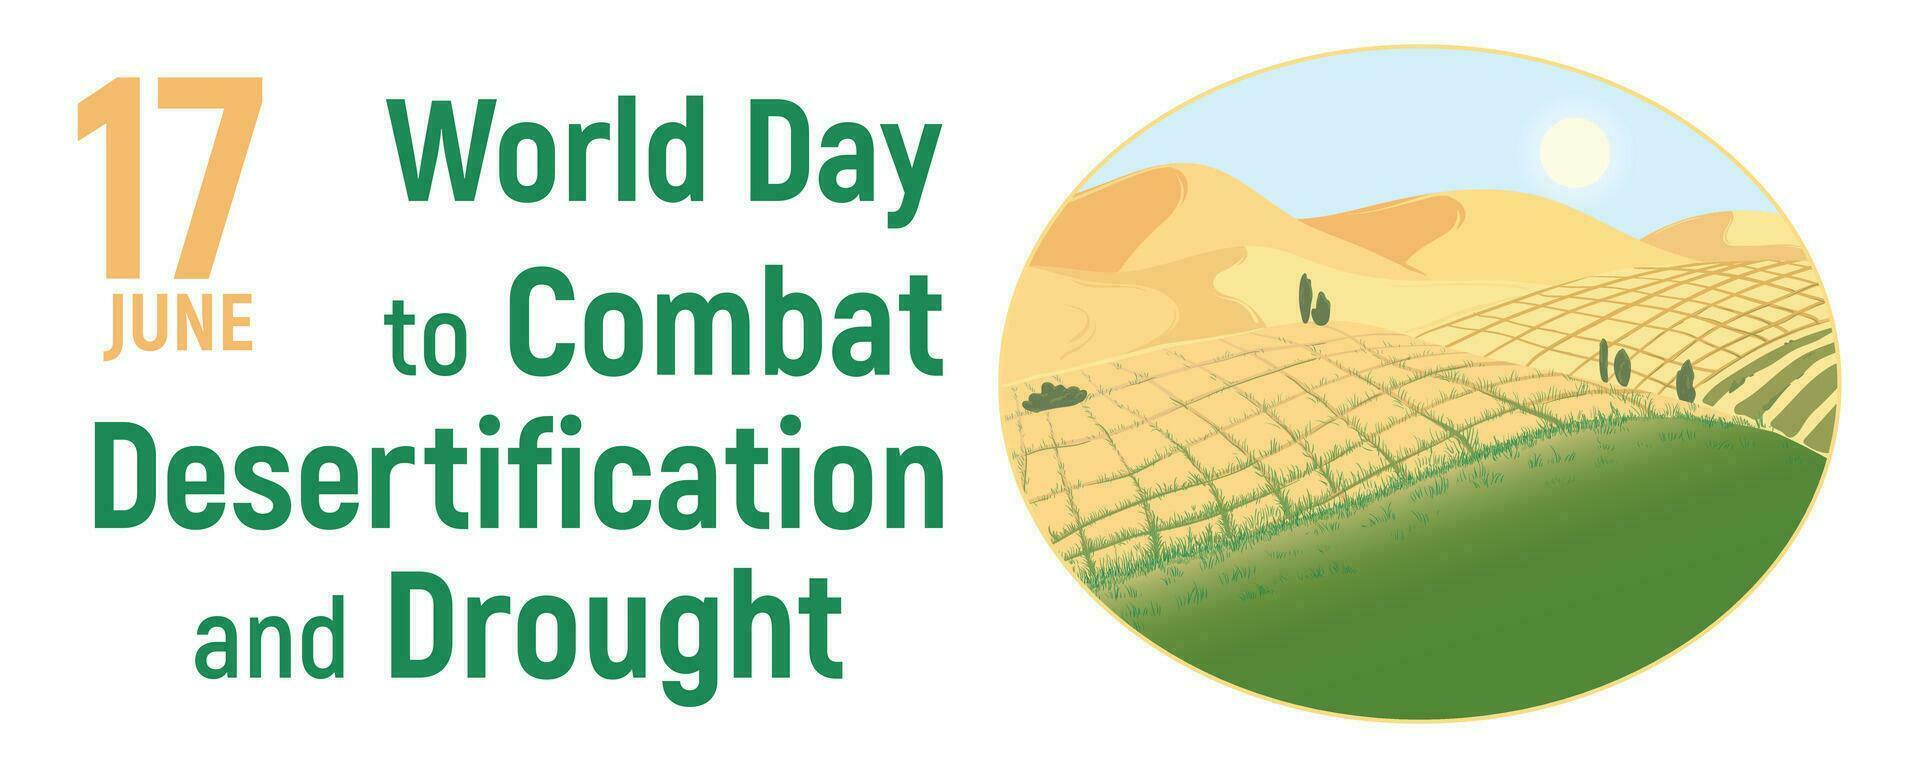 giugno 17 - mondo giorno per combattere desertificazione e siccità. vettore illustrazione.